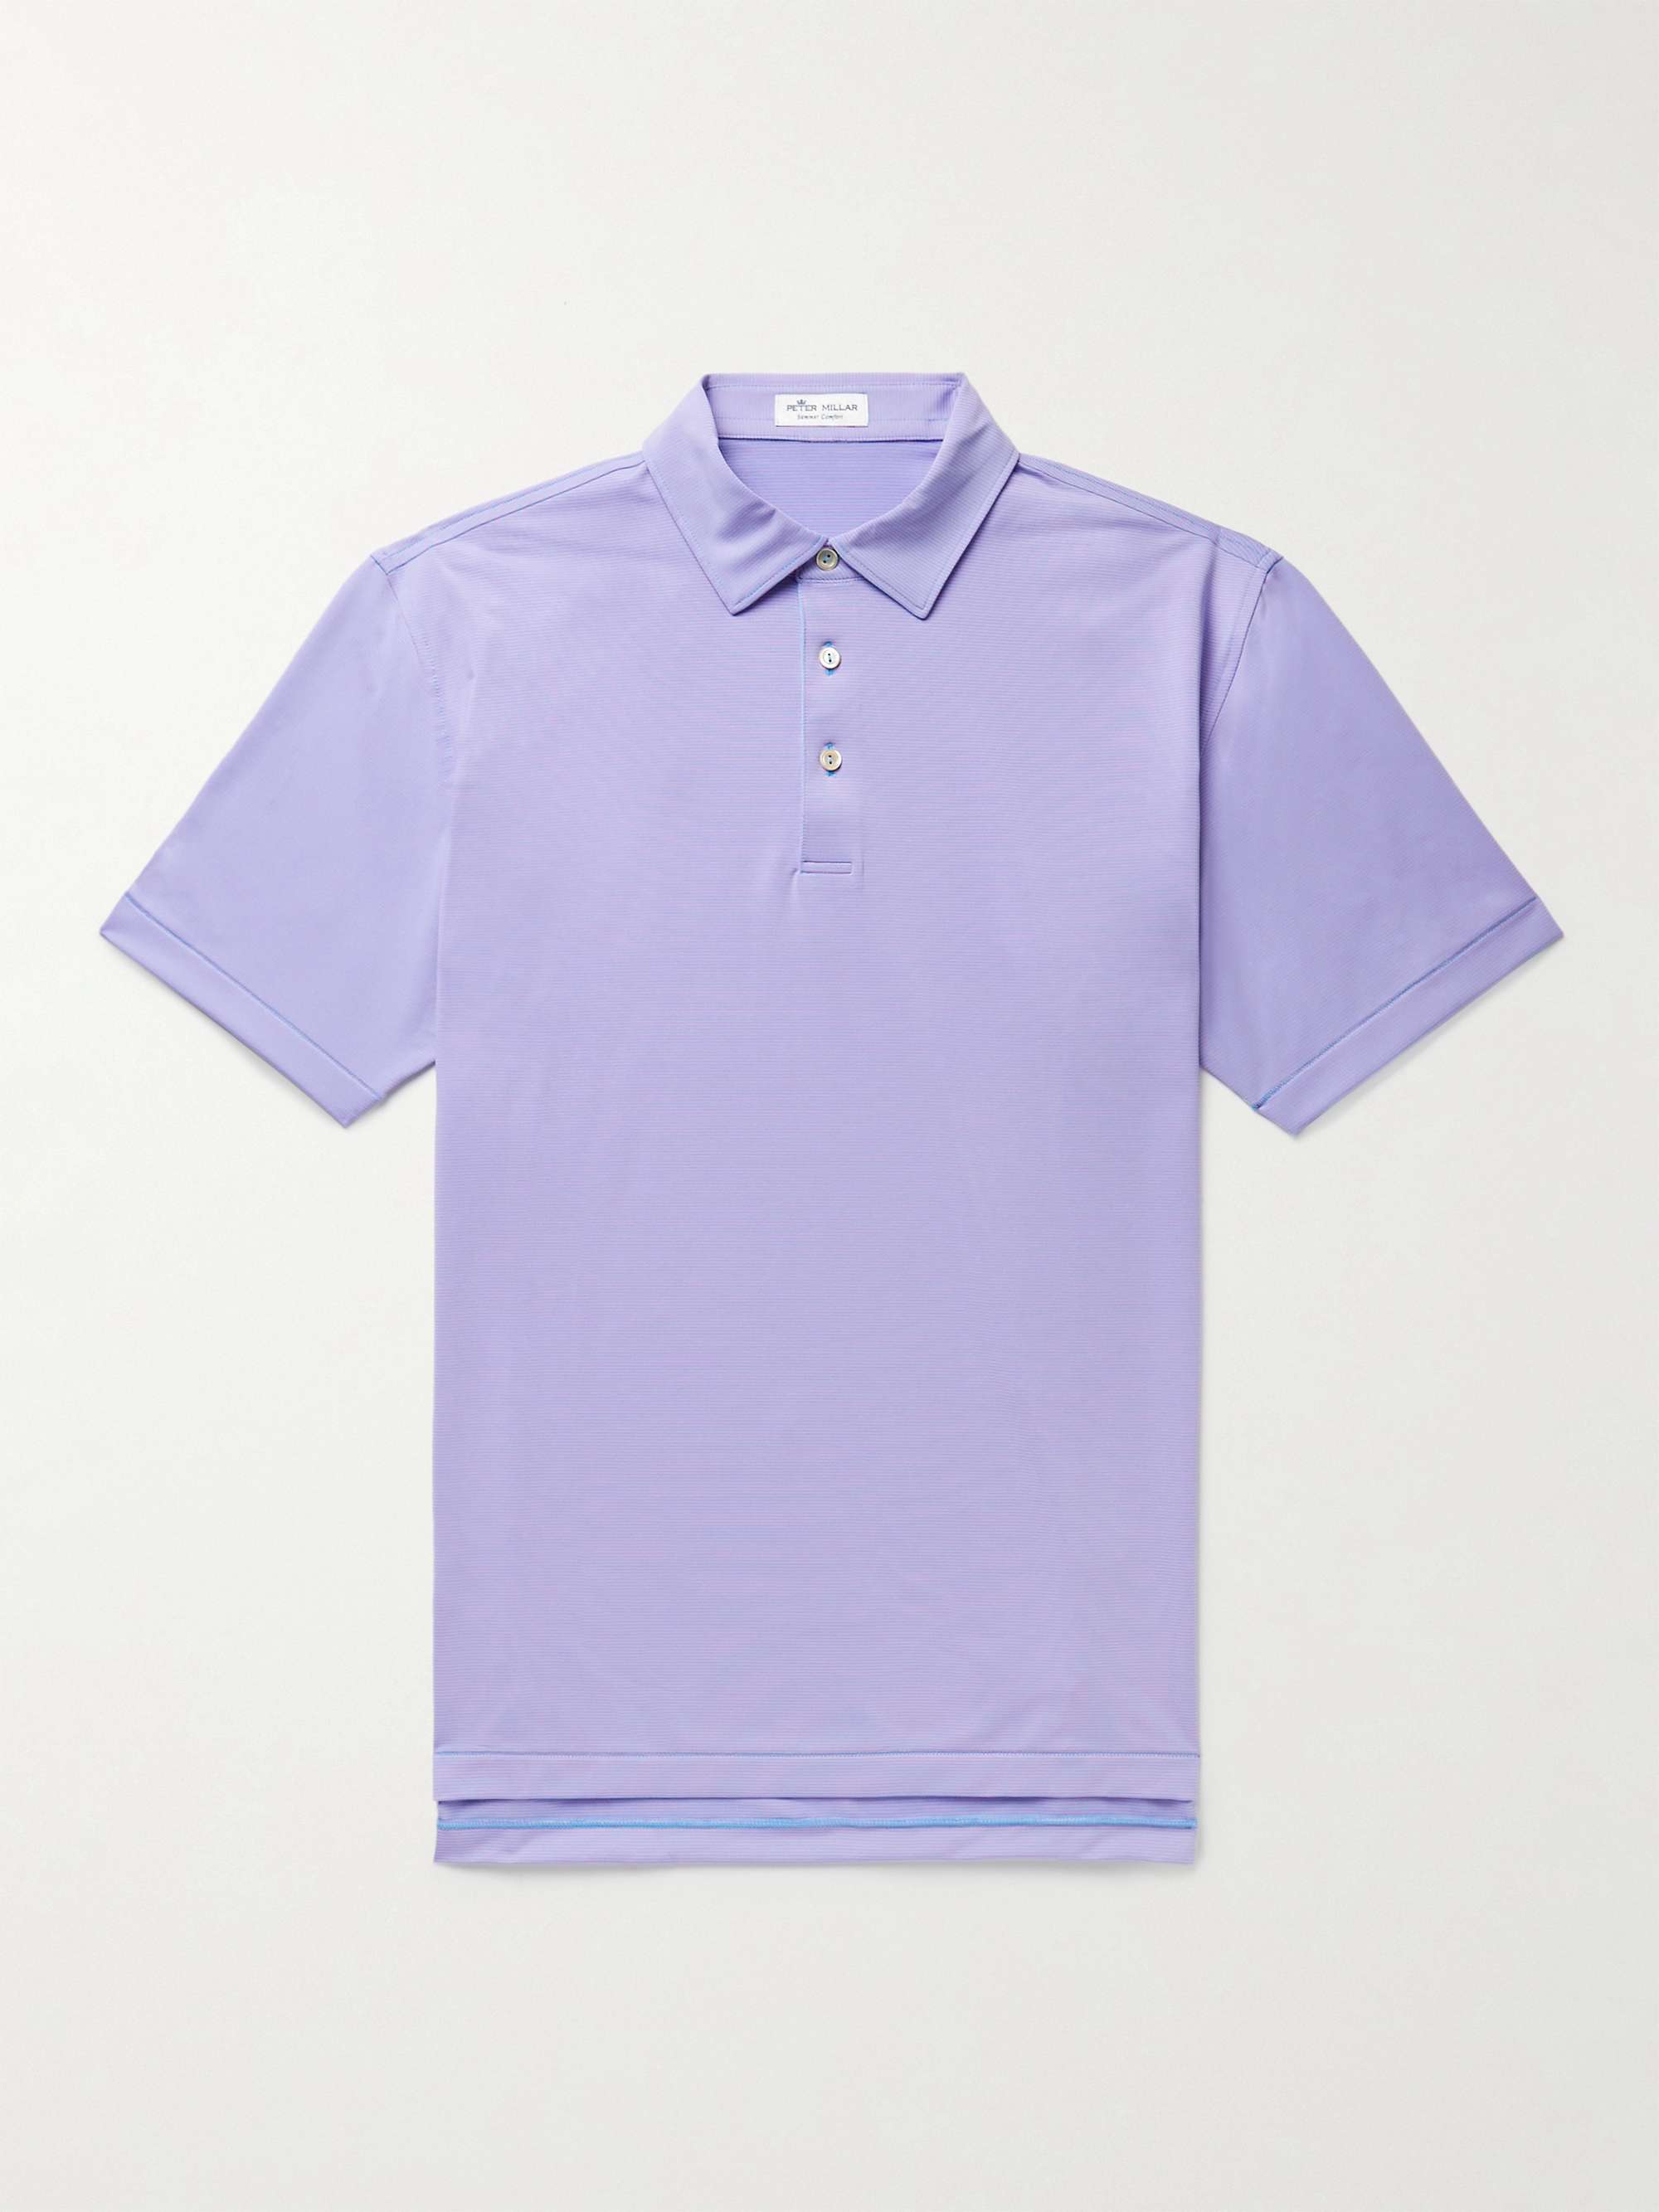 PETER MILLAR Jubilee Striped Tech-Jersey Golf Polo Shirt